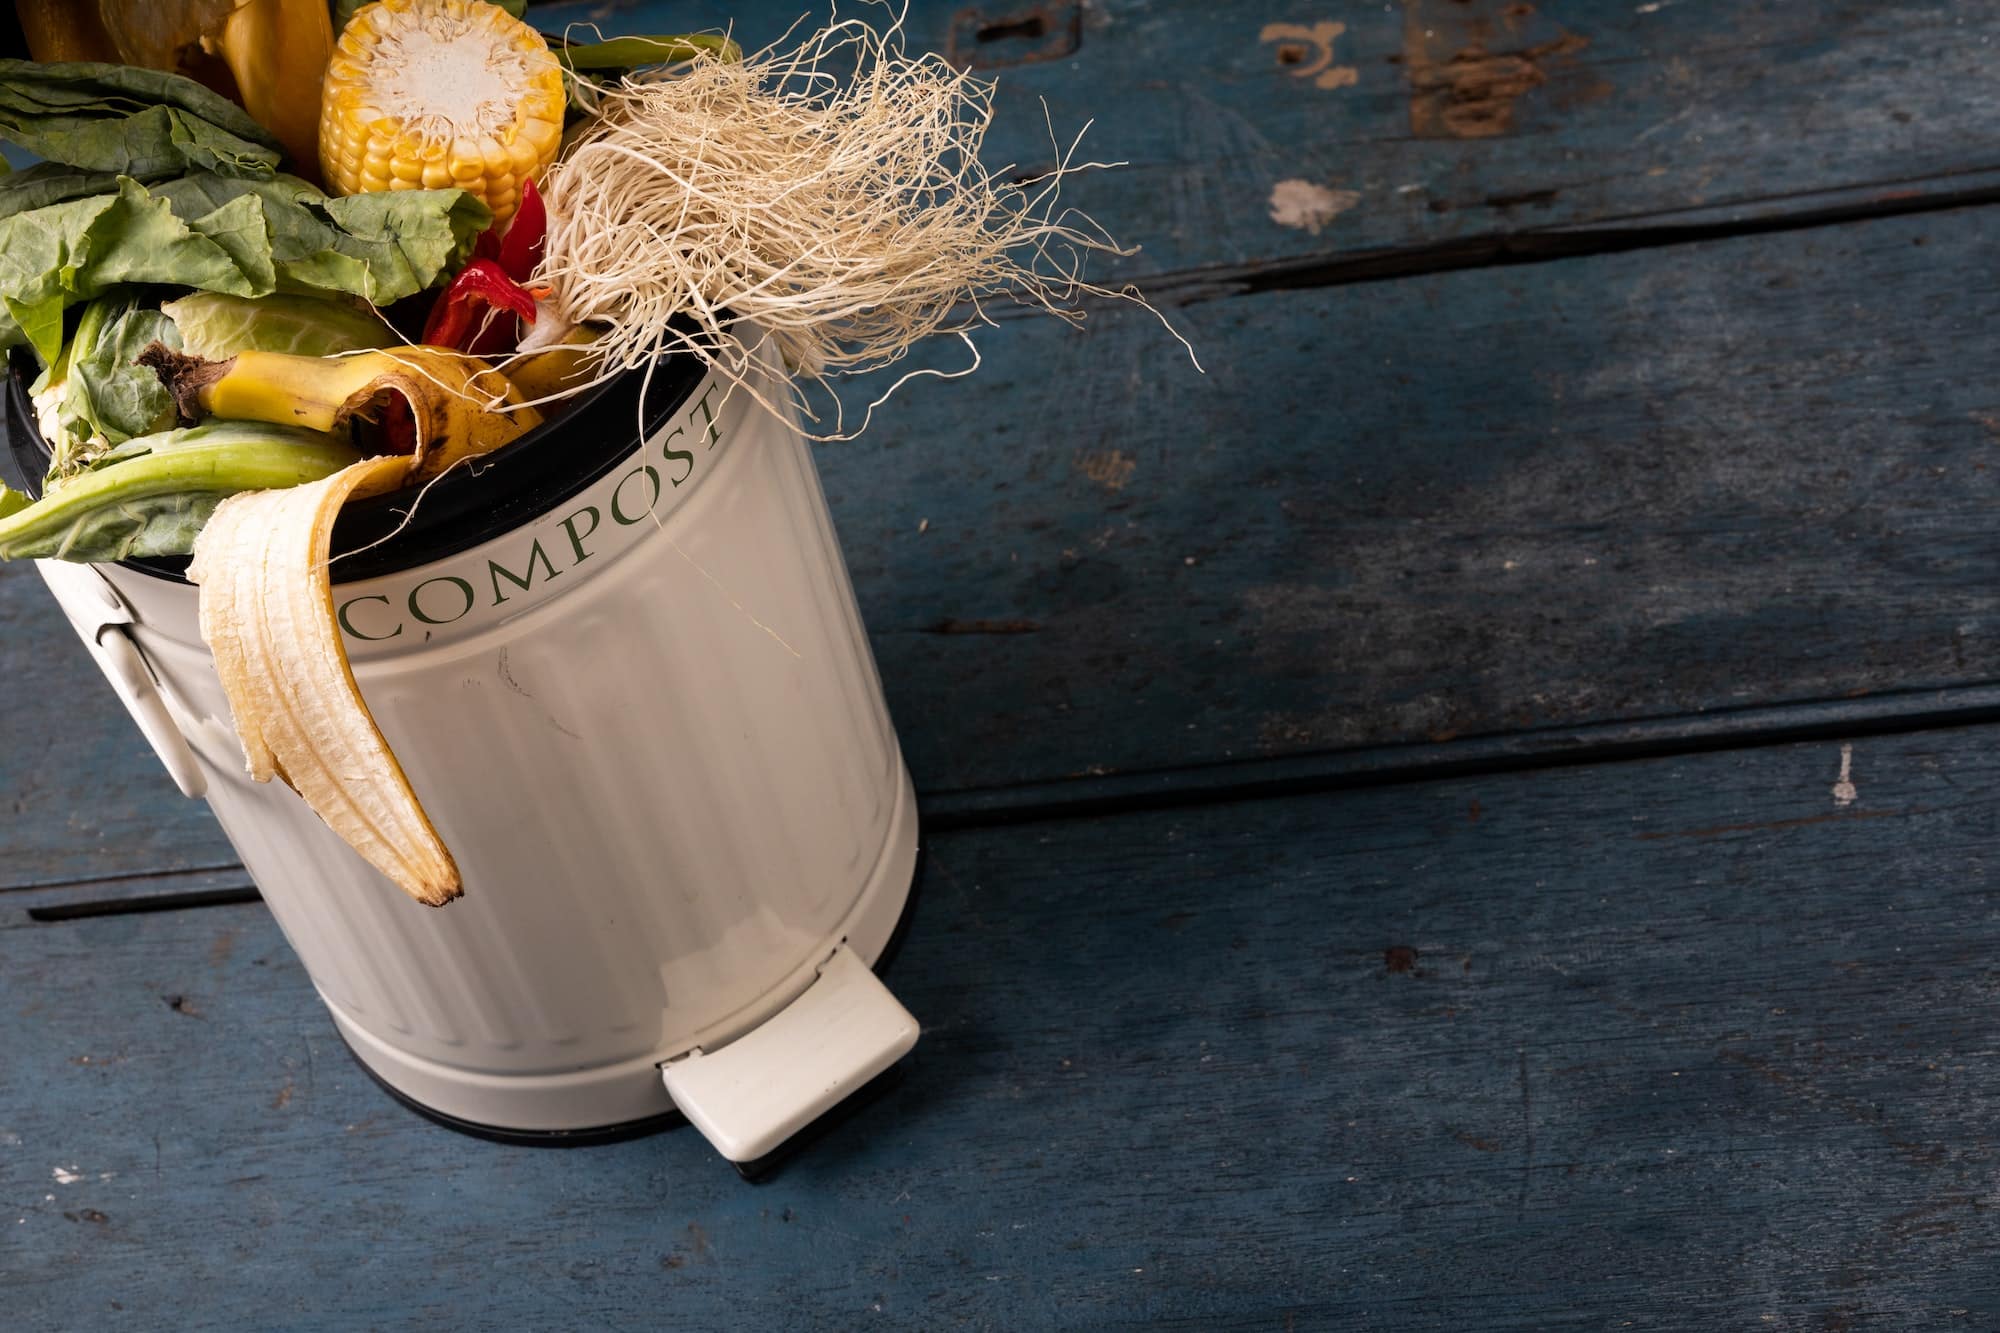 Acheter une poubelle de compost : quels sont les déchets à jeter dedans ?